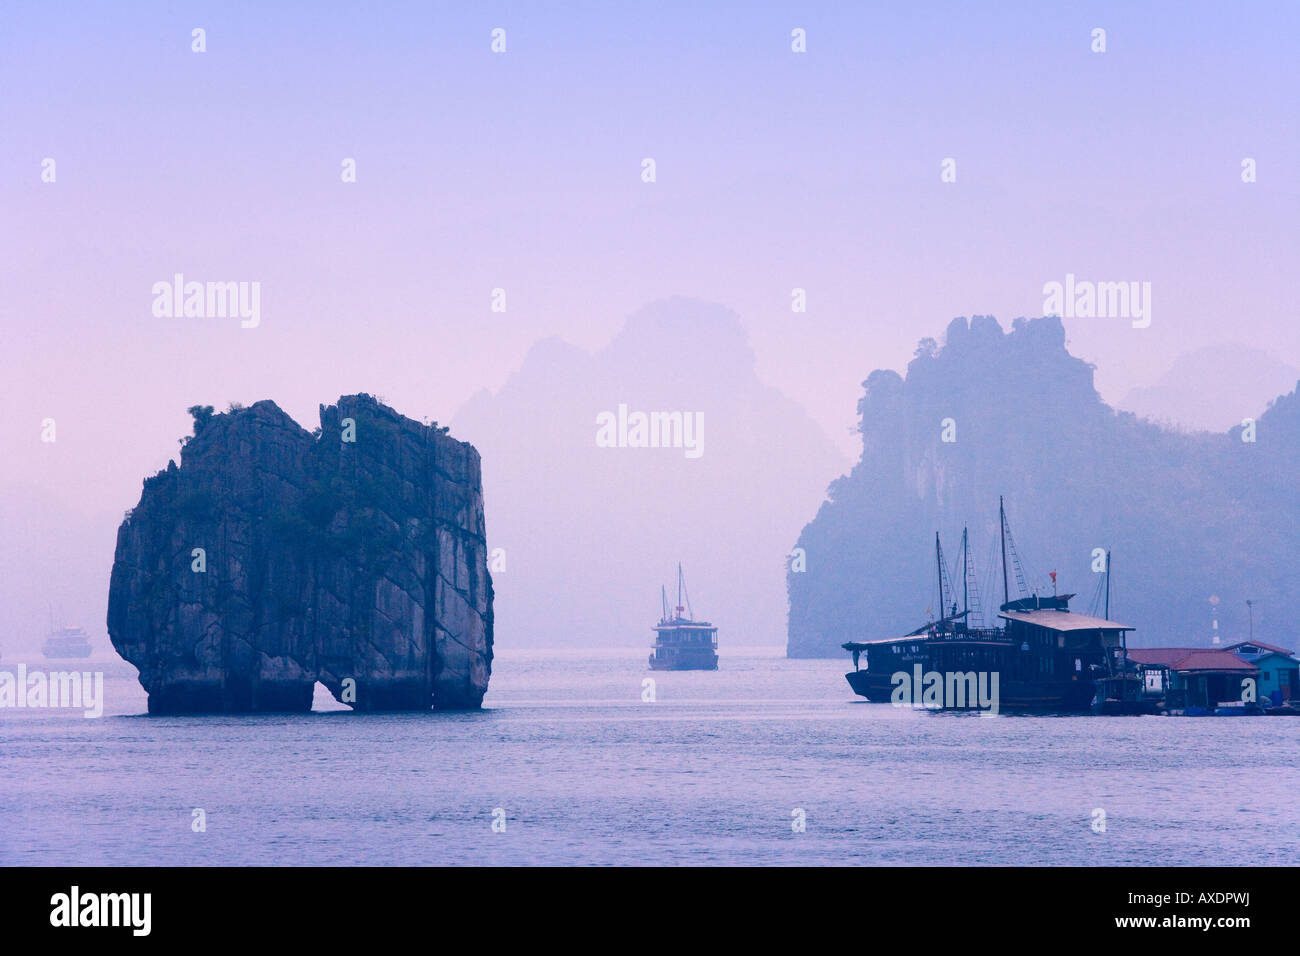 Junk barche e isole carsico nella baia di Halong Vietnam Foto Stock